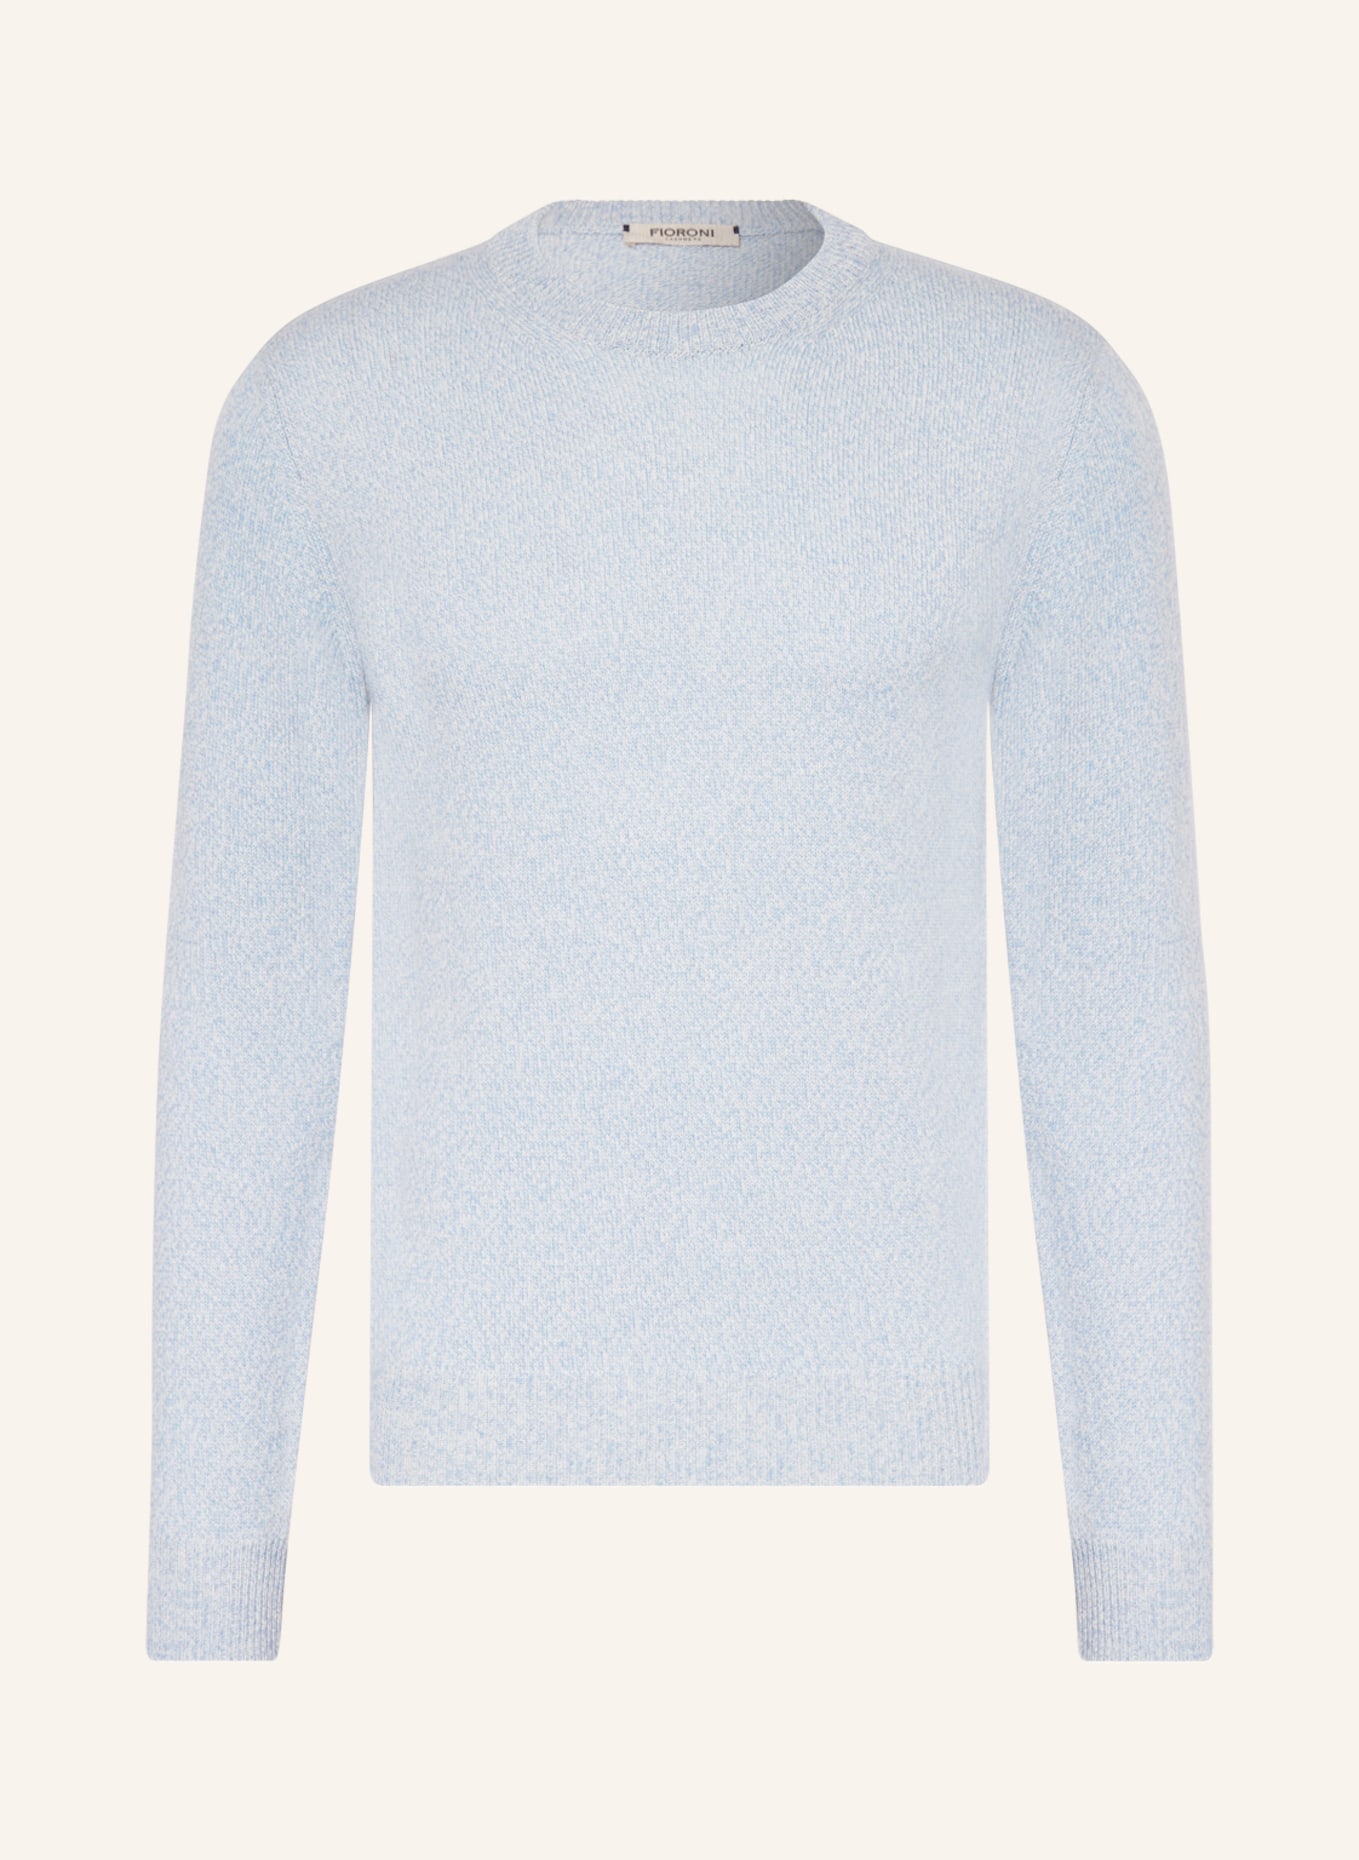 FIORONI Cashmere-Pullover, Farbe: HELLBLAU (Bild 1)